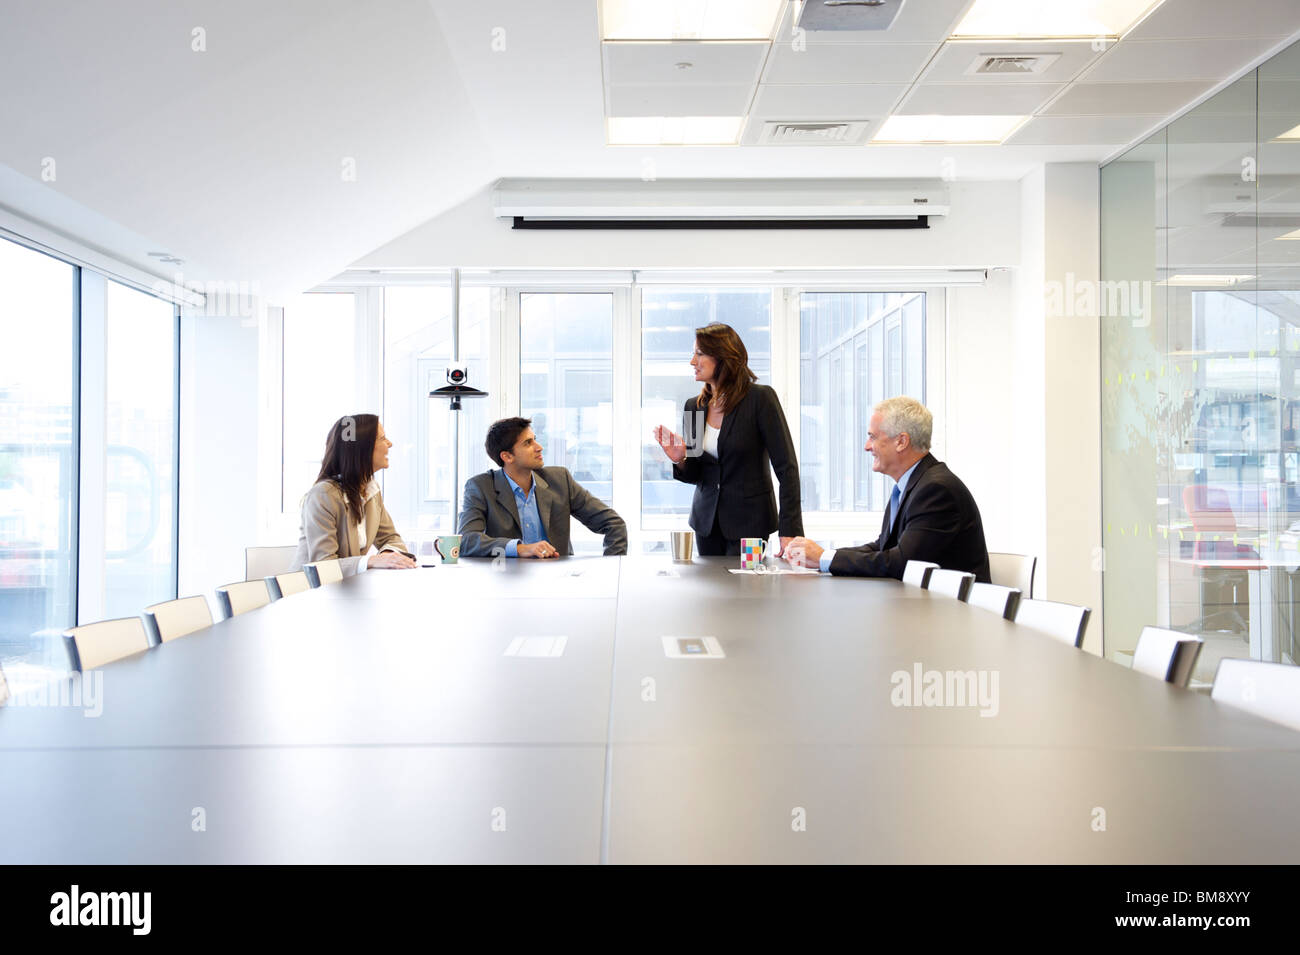 Weibliche Führungskraft im Gespräch mit einer Gruppe von Menschen in einem Büromeeting Stockfoto